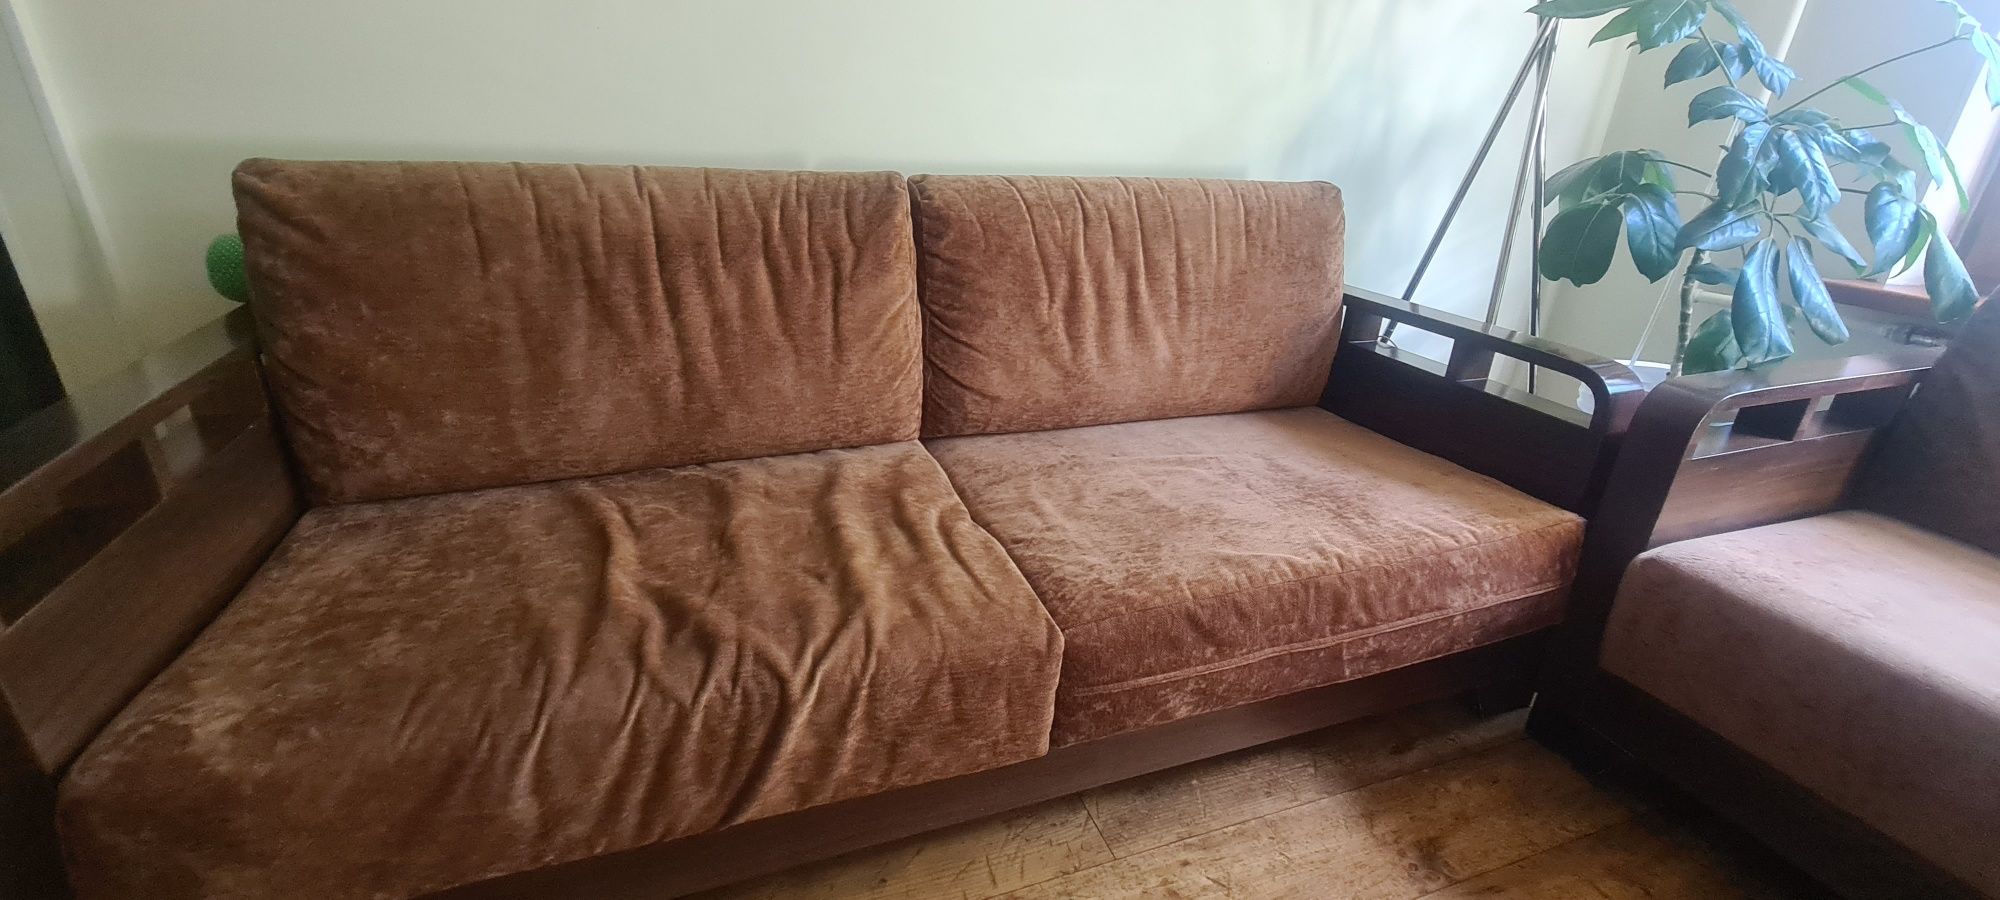 Продам комплект диванов (3х местный -195длина×83,